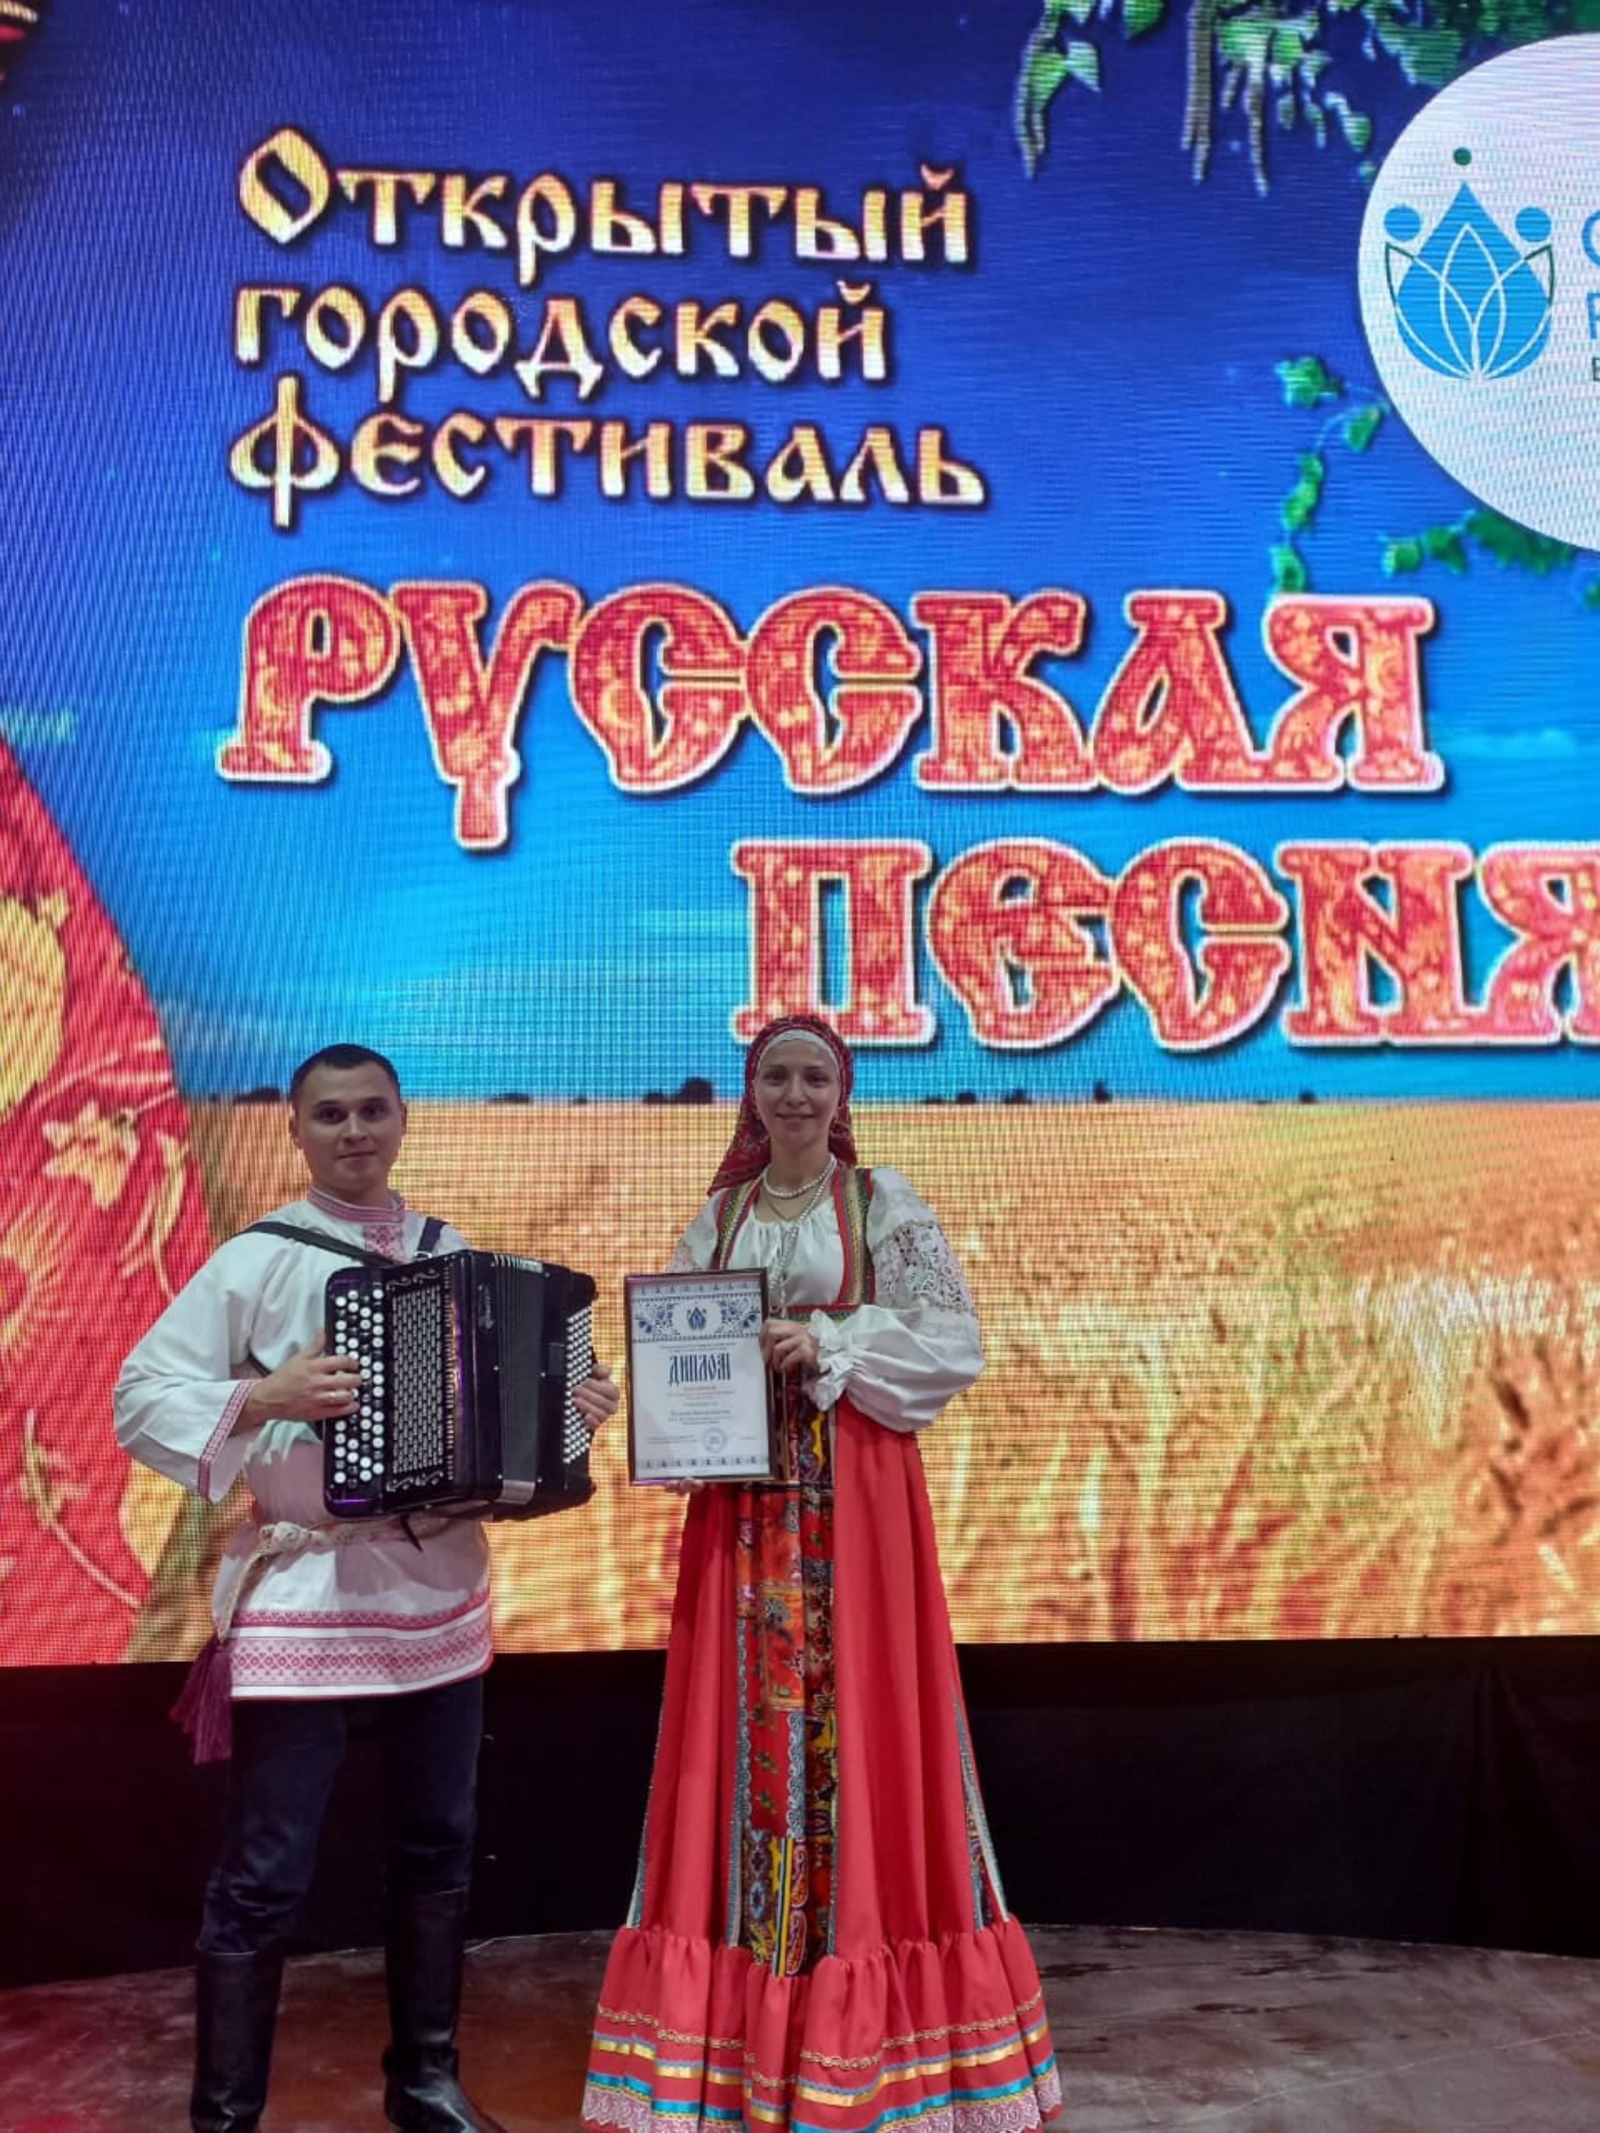 Чишминцы выступили на фестивале "Русская песня"